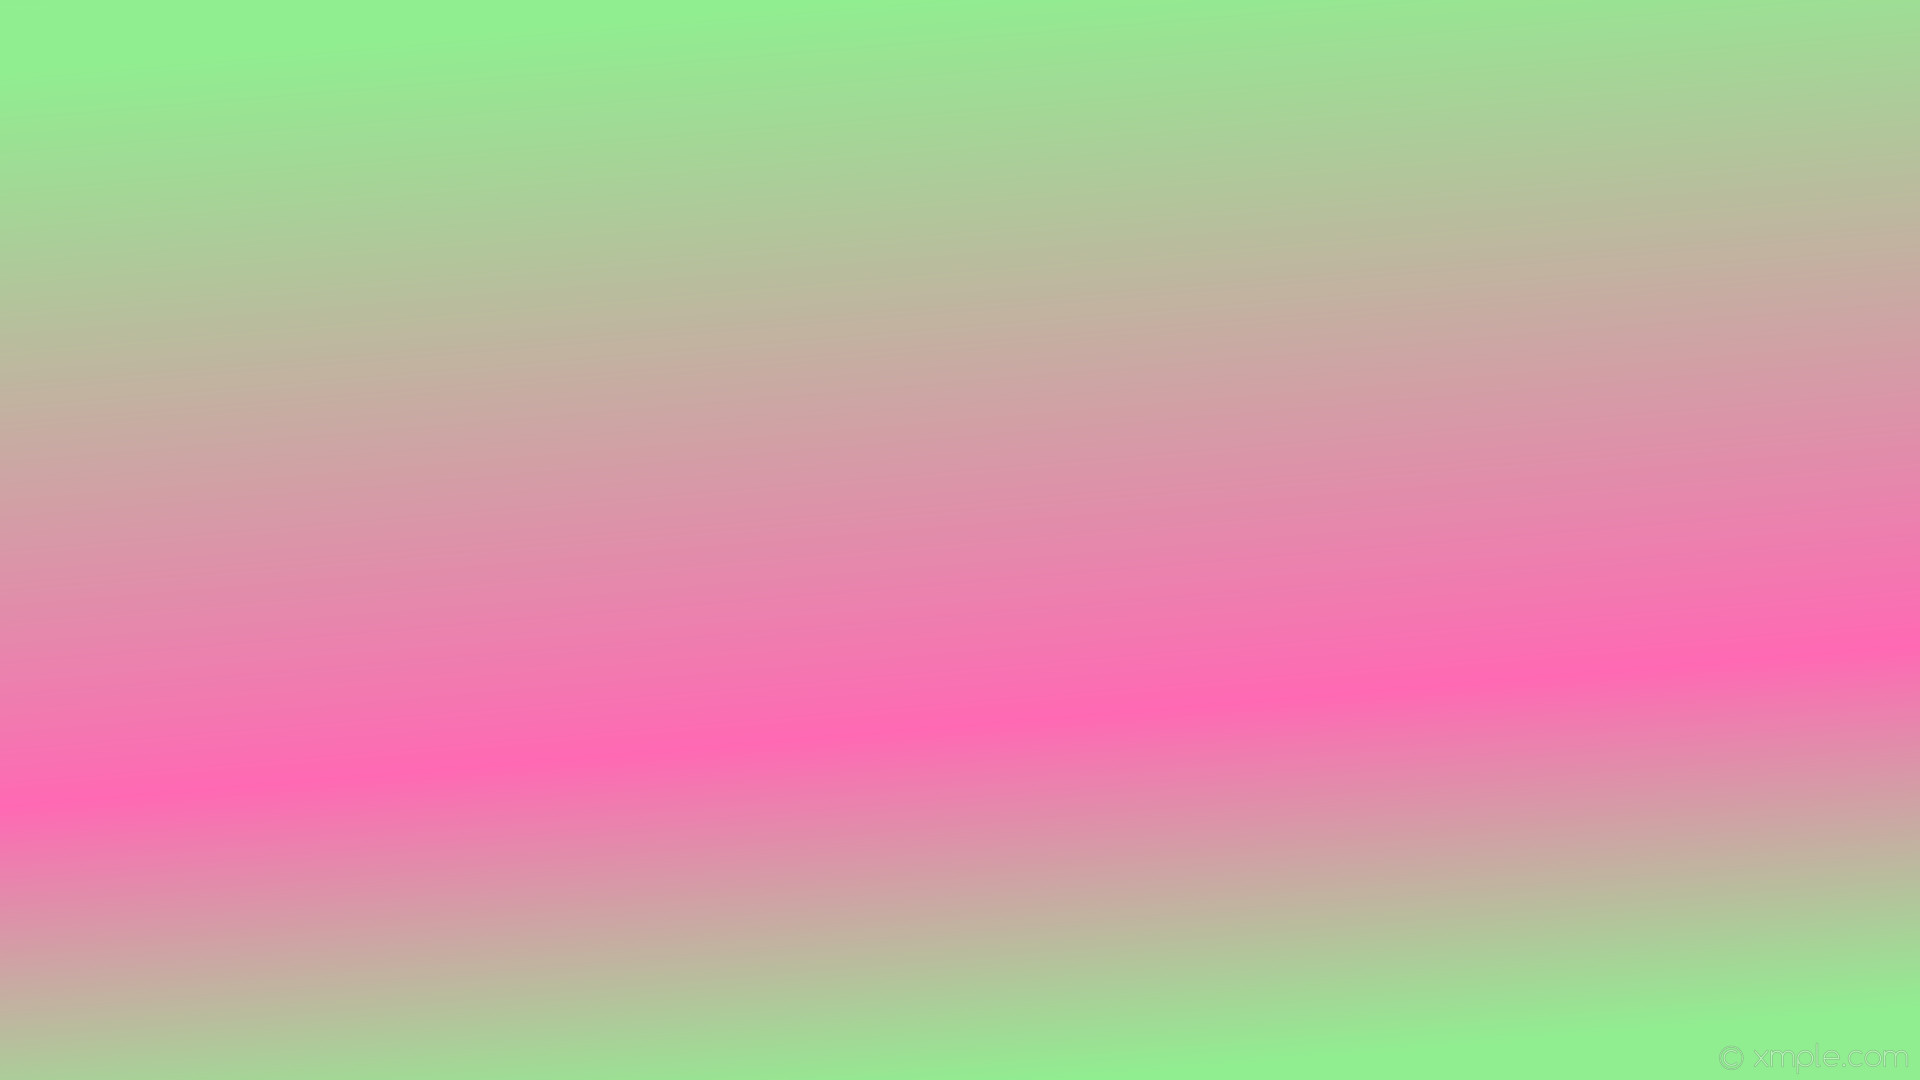 1920x1080 wallpaper linear pink green gradient highlight light green hot pink #90ee90  #ff69b4 285Â°